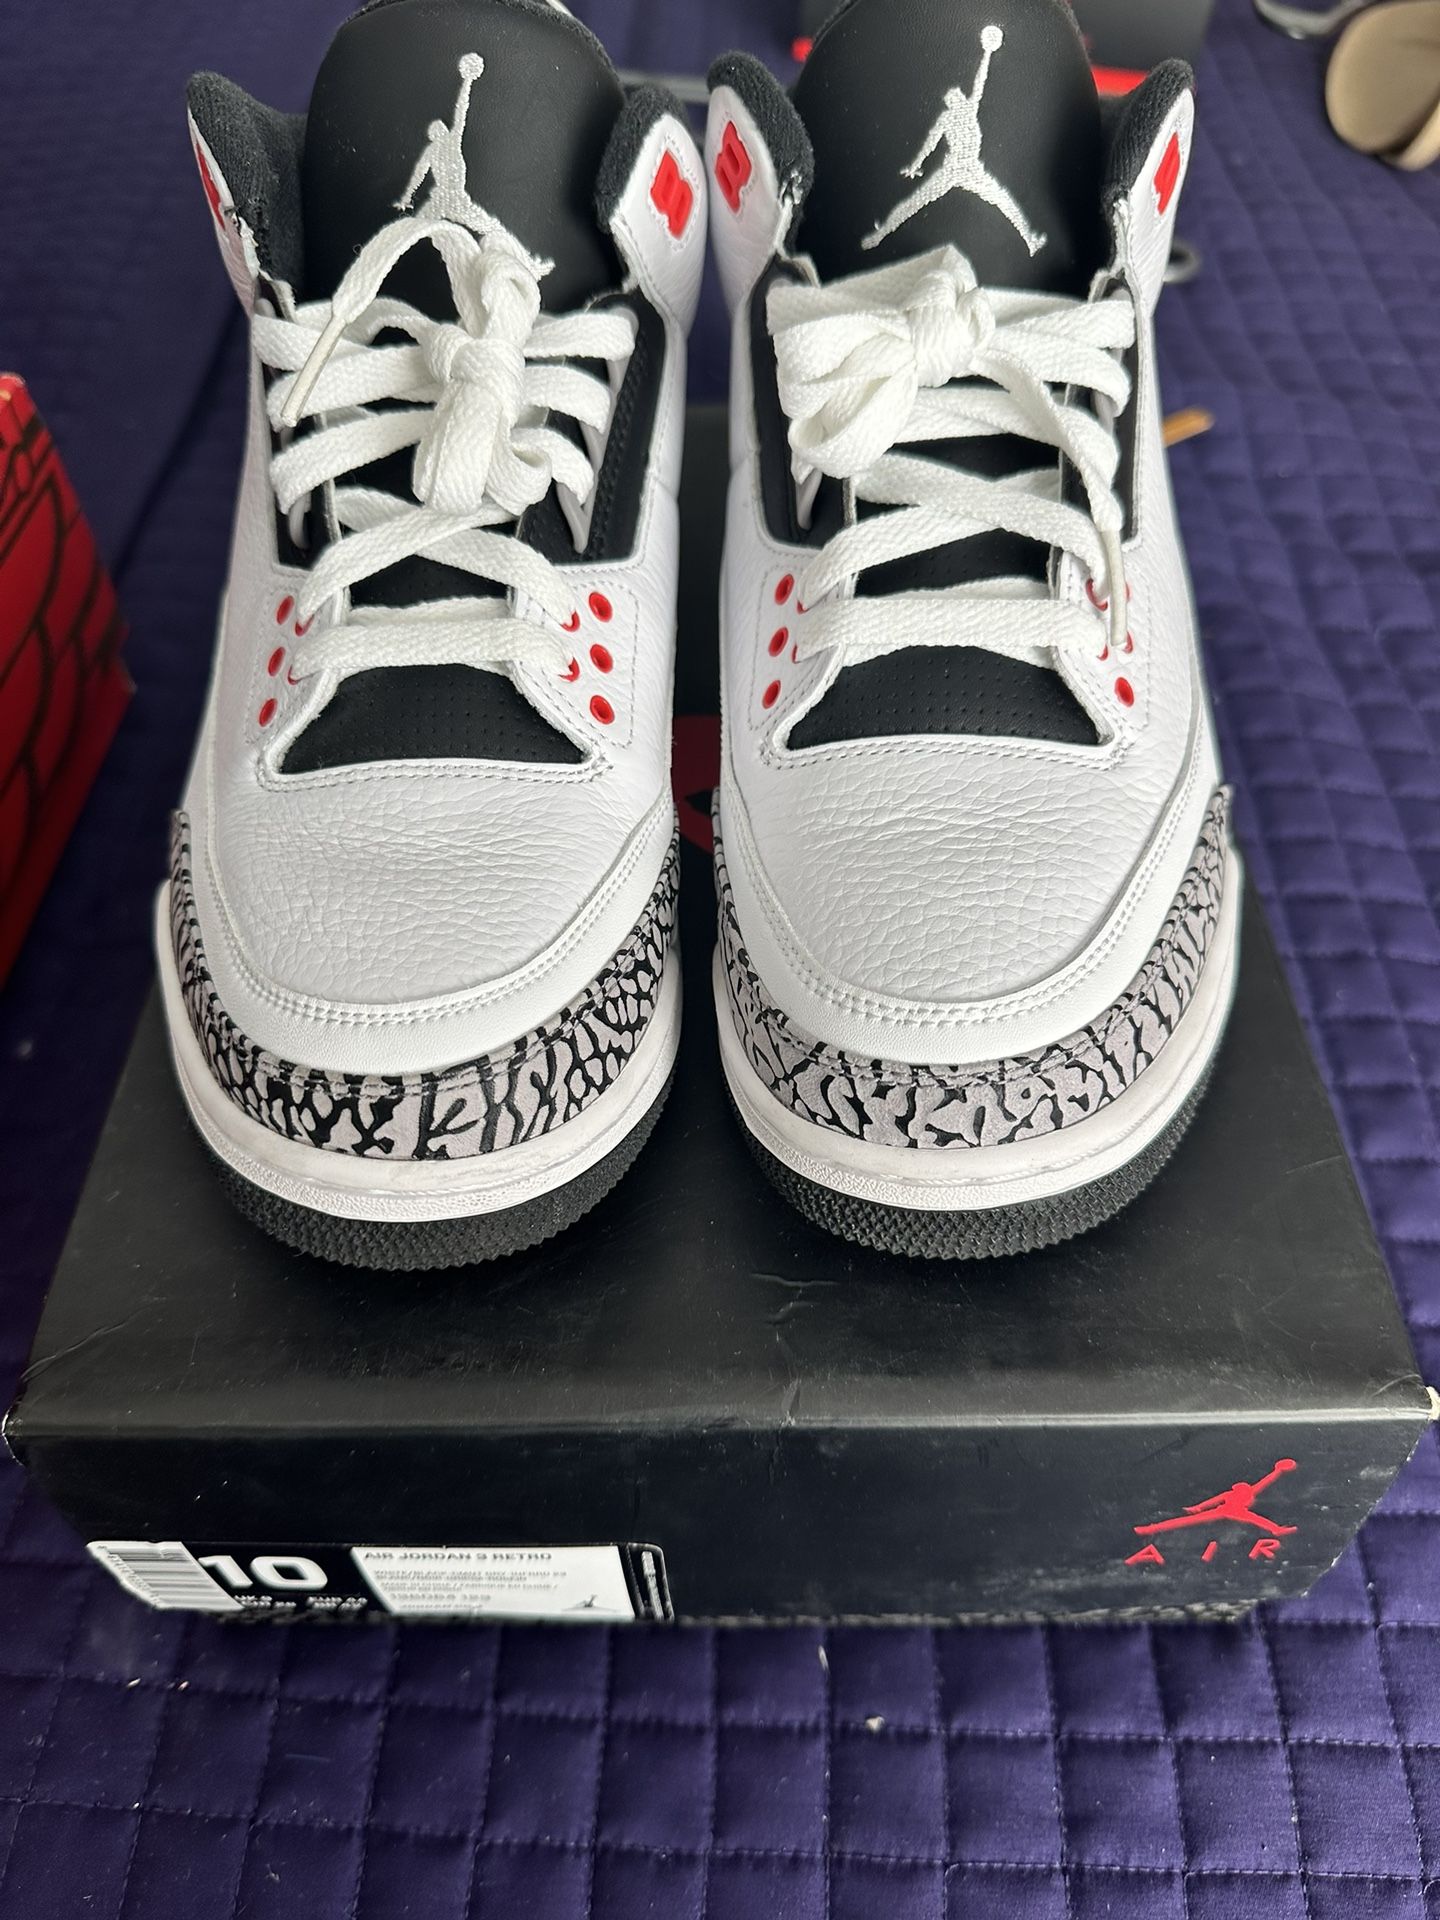 Air Jordan 3 Infrared 